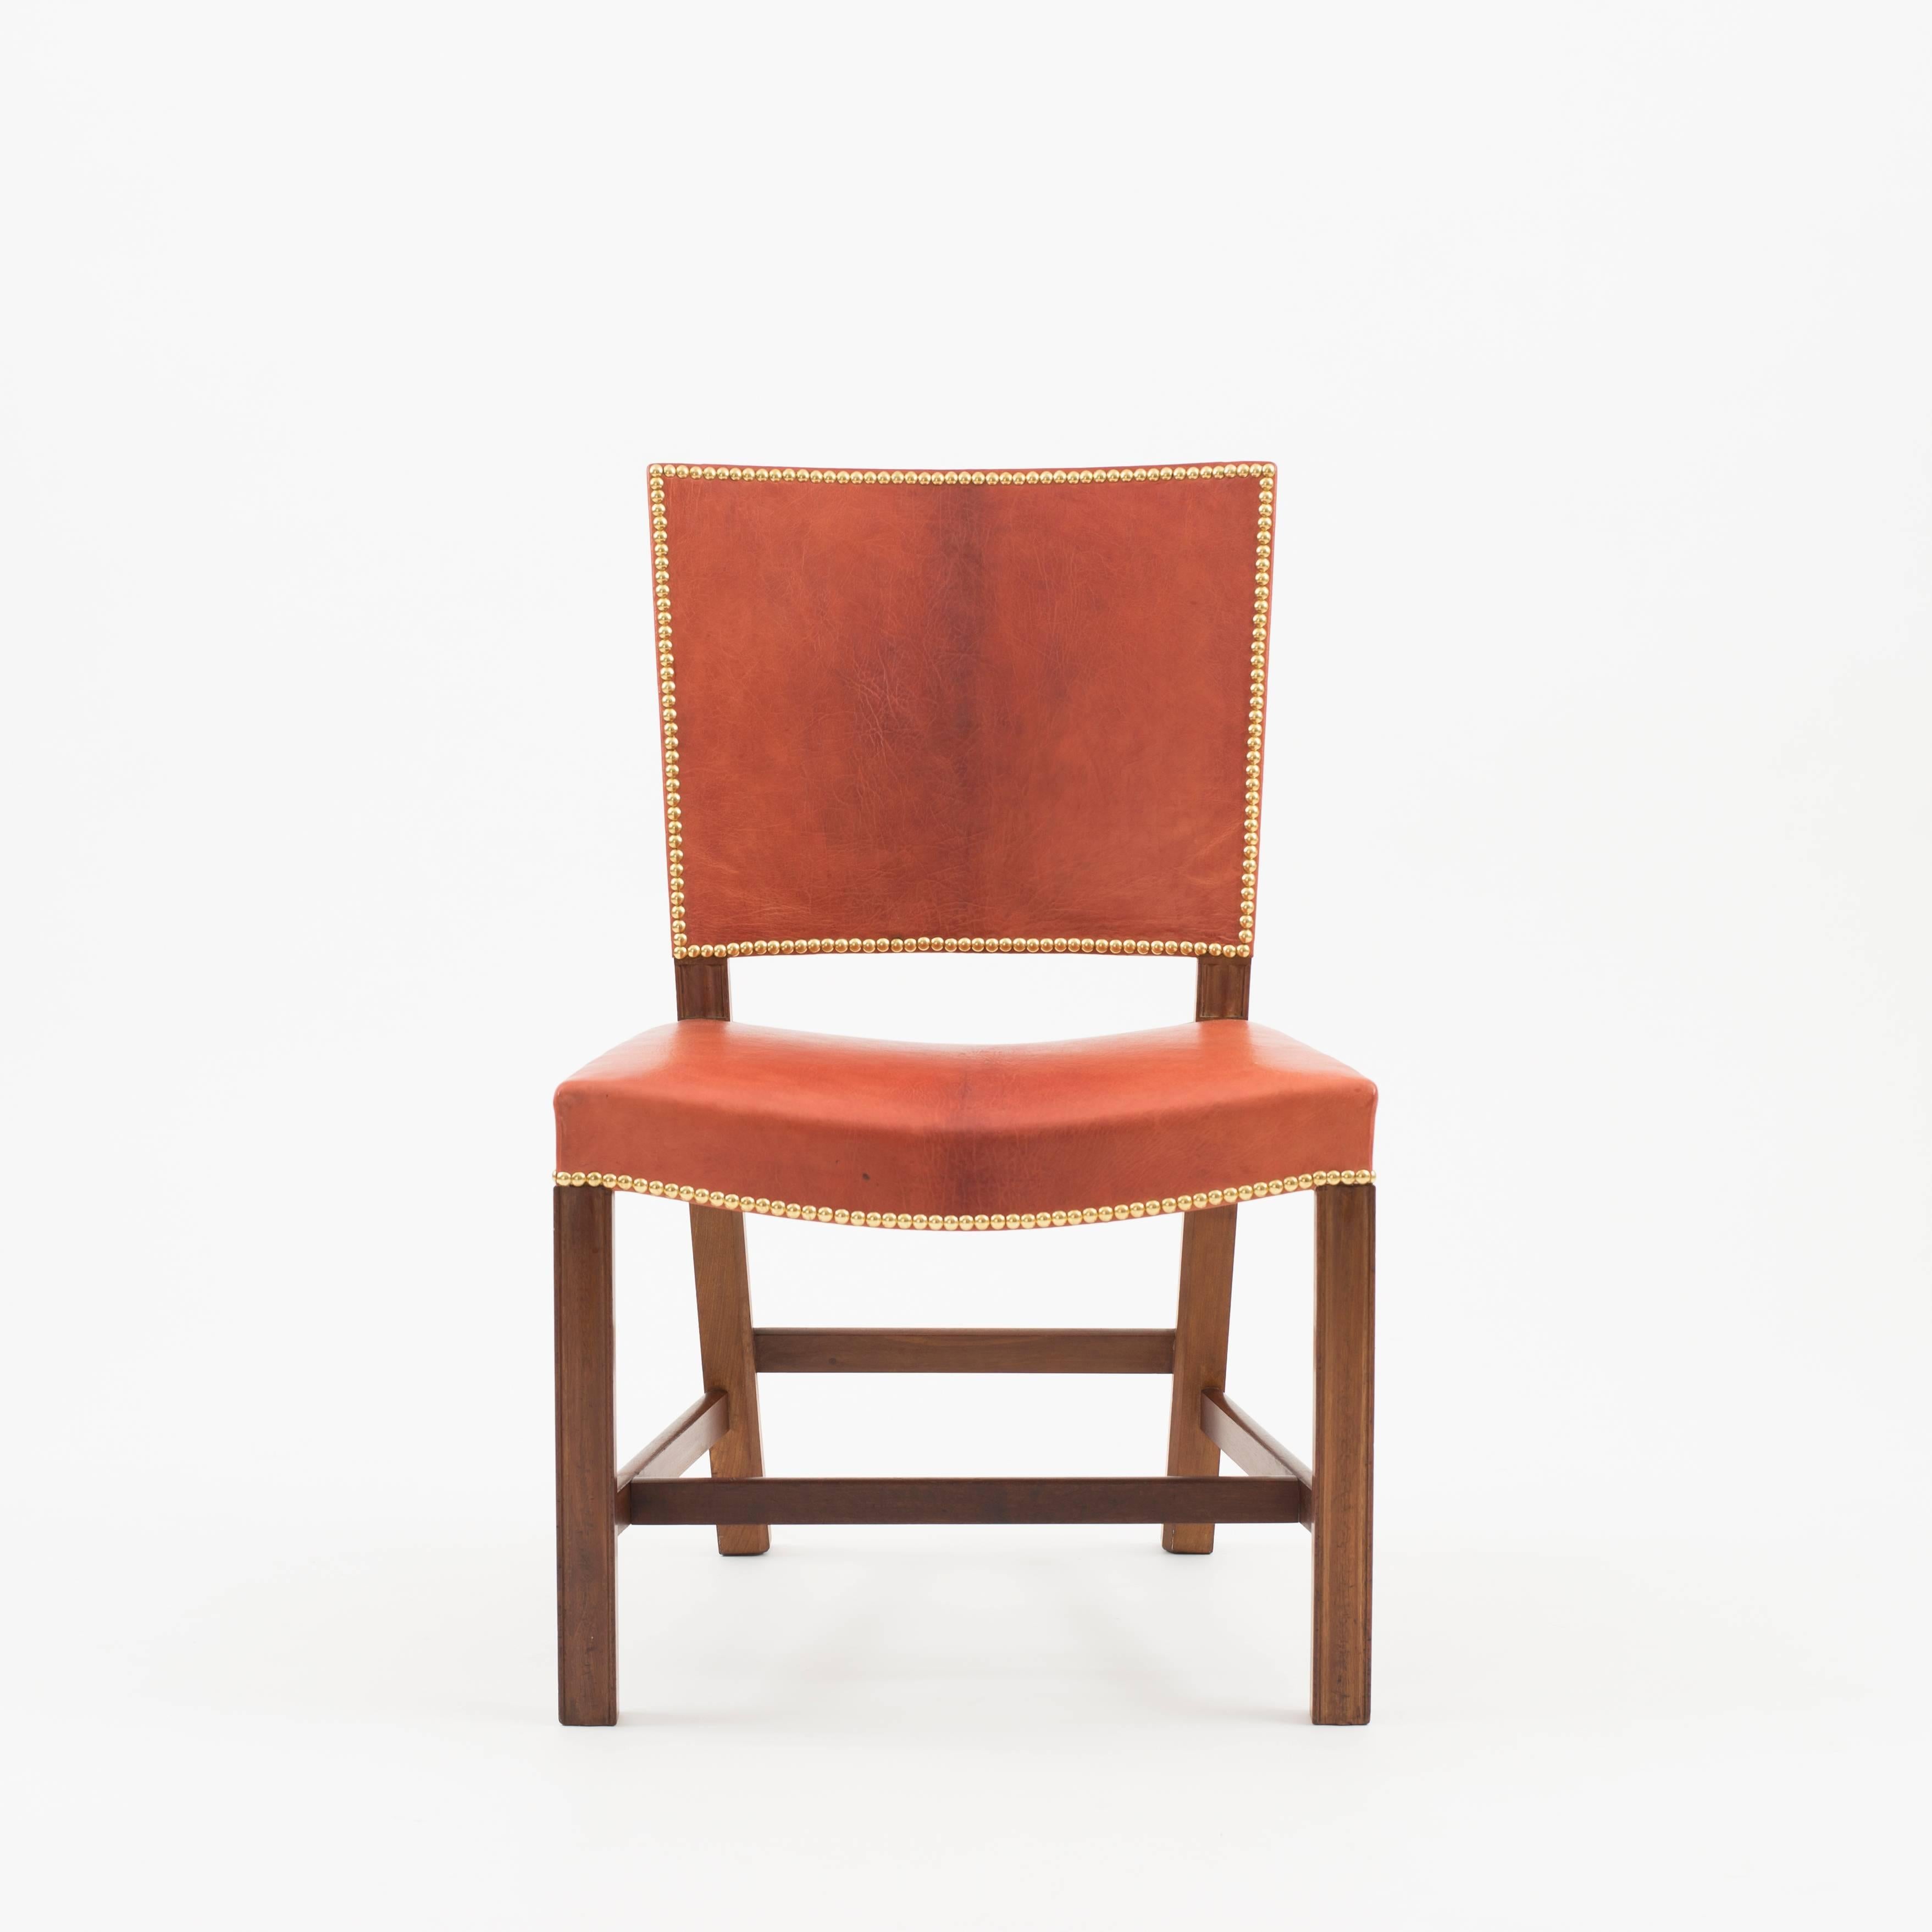 Kaare Klint 'Red Chair' aus kubanischem Mahagoni, Nigerleder und Messingnägeln. Ausgeführt von Rud. Rasmussen 1936-1940.

Unterseite mit Papierlabel des Herstellers RUD. RASMUSSENS/SNEDKERIER/45 NØRREBROGAD/KØBENHAVN, mit Bleistift geschriebene